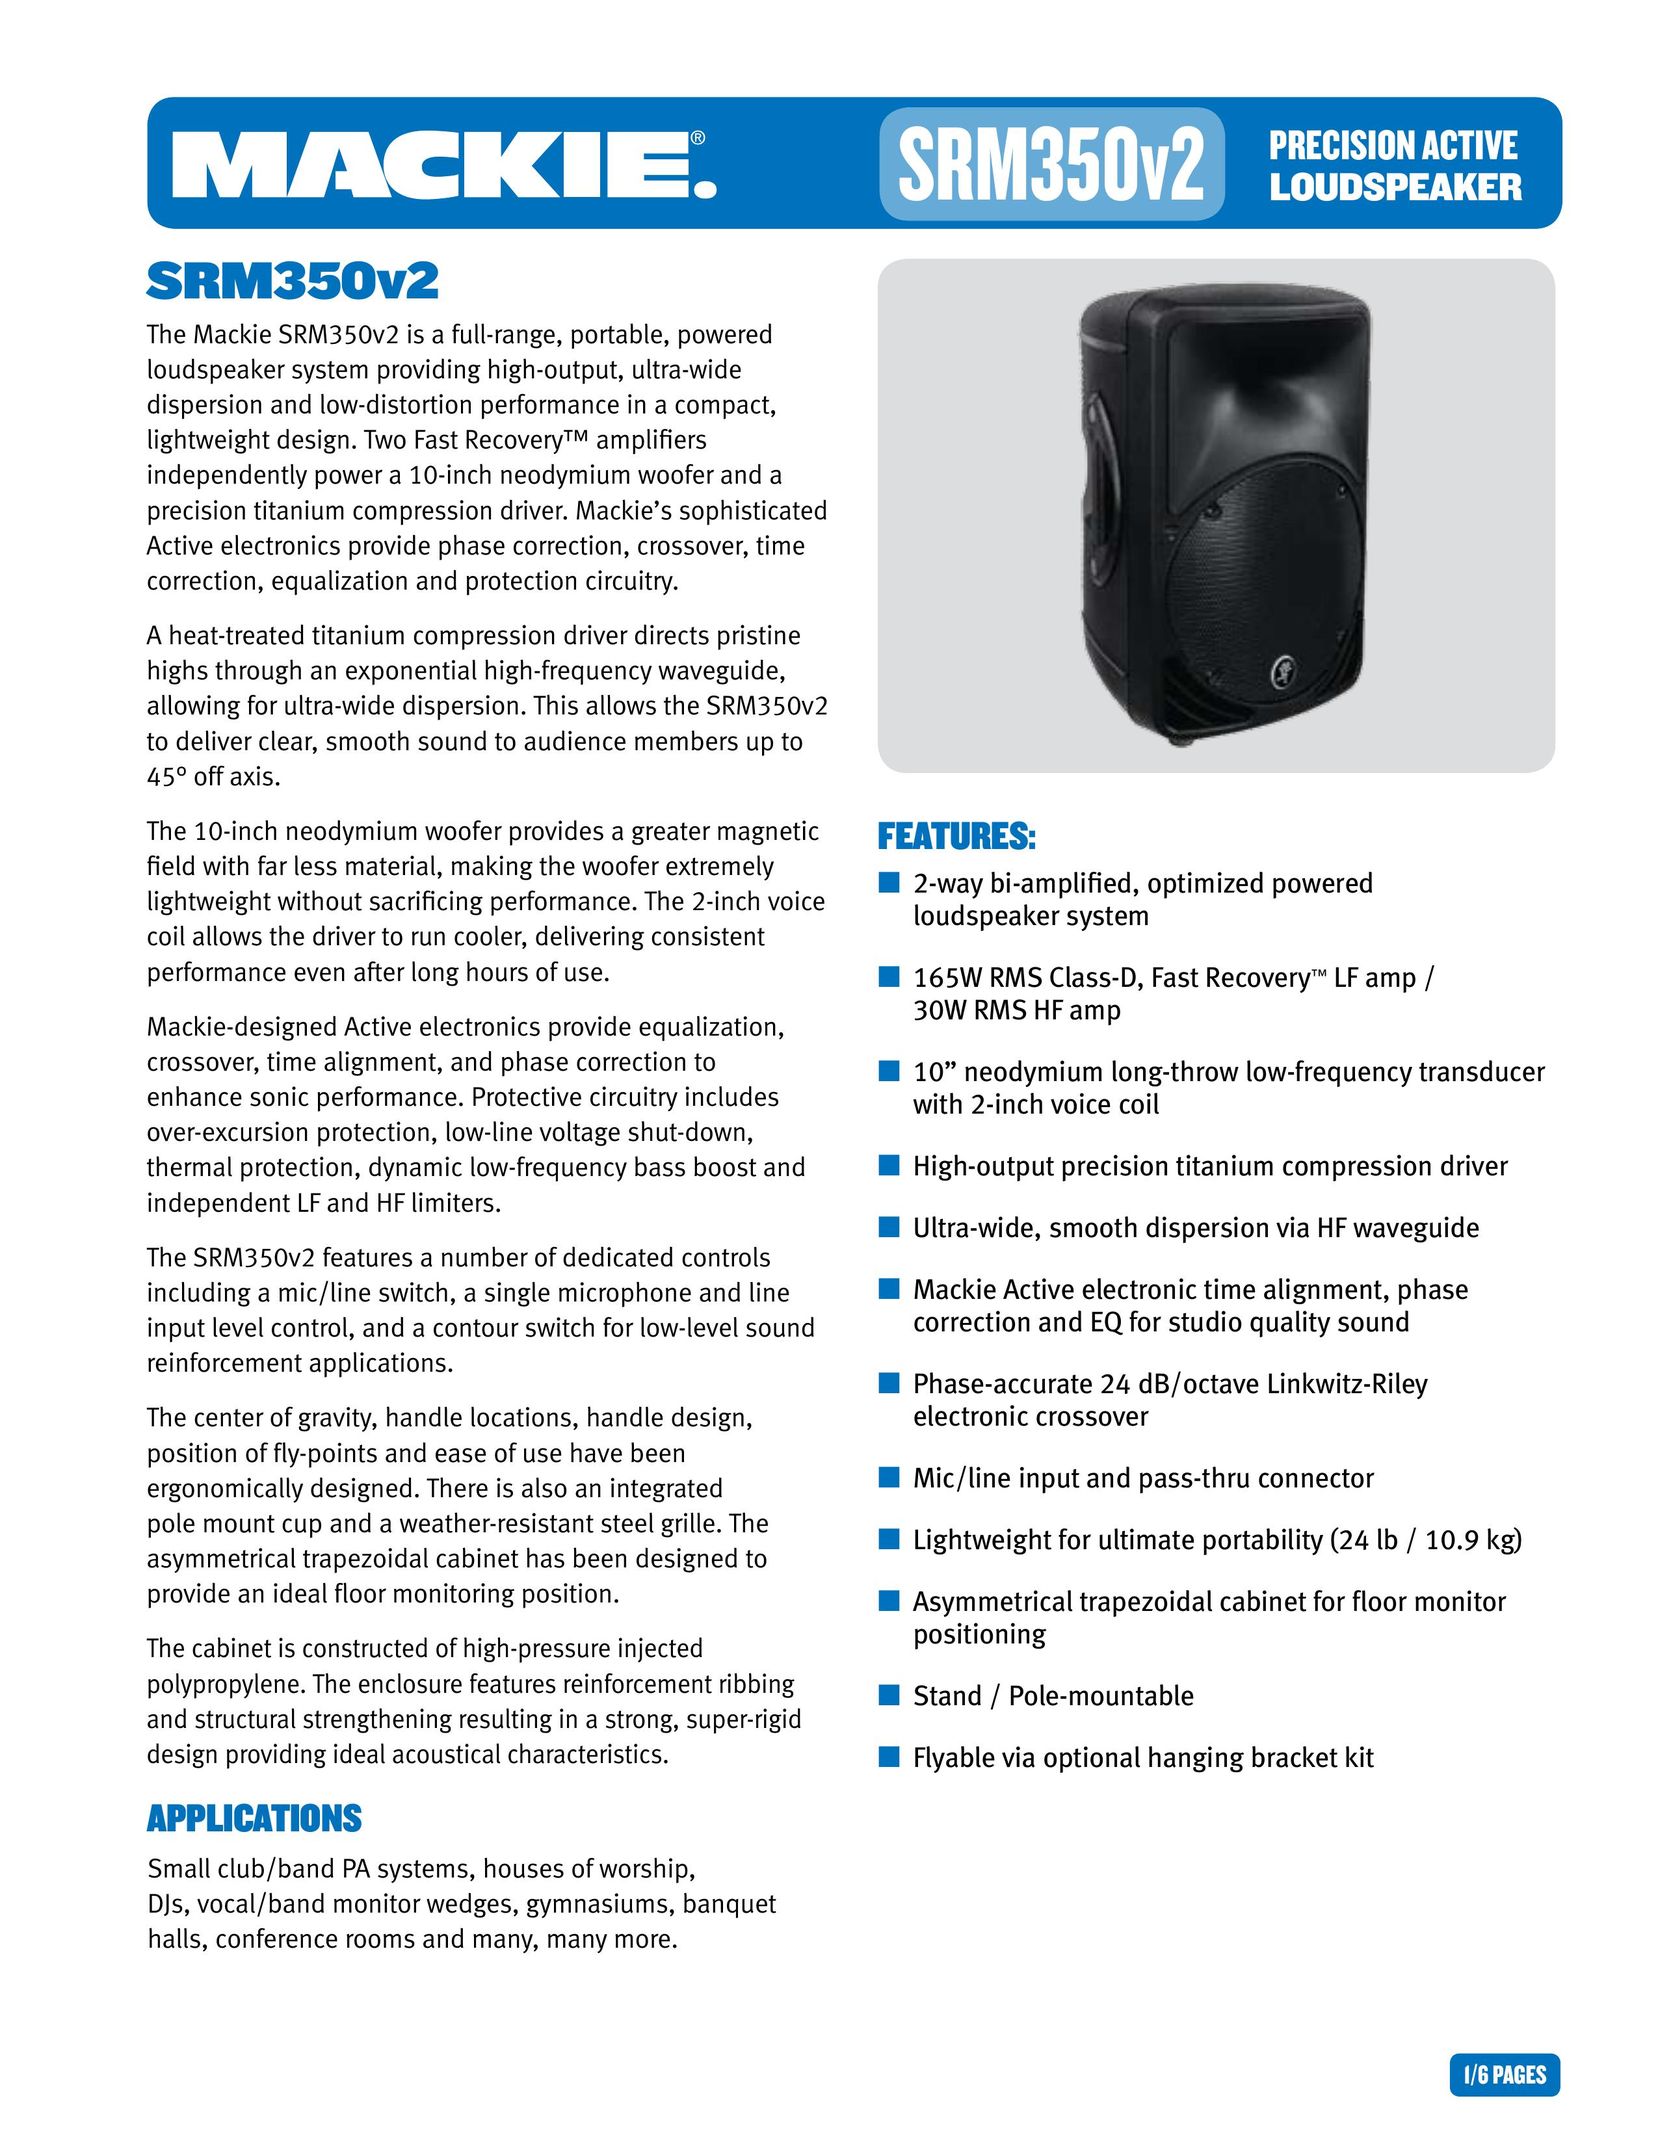 Mackie SRM350v2 Speaker User Manual